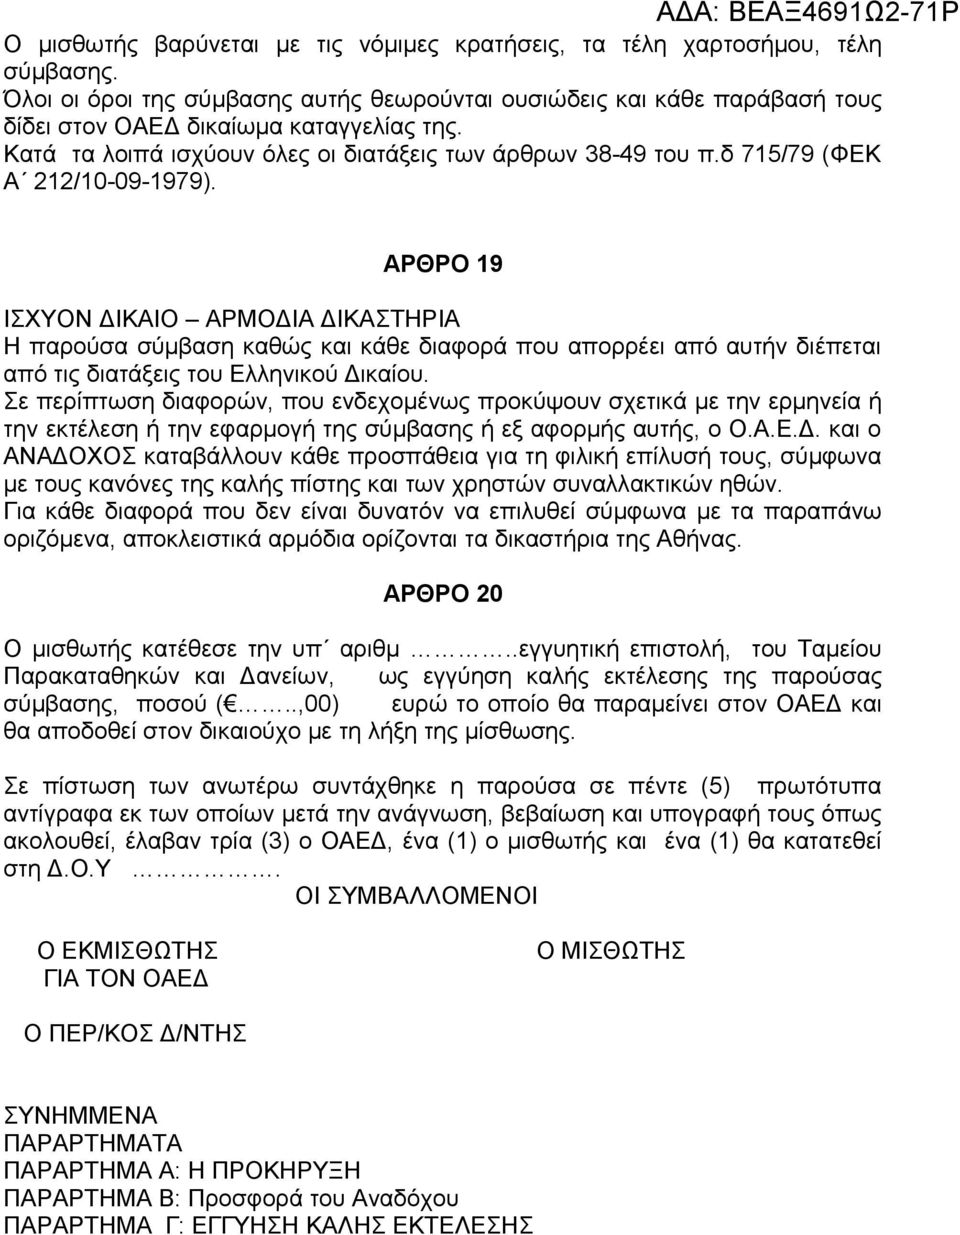 ΑΡΘΡΟ 19 ΙΣΧΥΟΝ ΔΙΚΑΙΟ ΑΡΜΟΔΙΑ ΔΙΚΑΣΤΗΡΙΑ Η παρούσα σύμβαση καθώς και κάθε διαφορά που απορρέει από αυτήν διέπεται από τις διατάξεις του Ελληνικού Δικαίου.